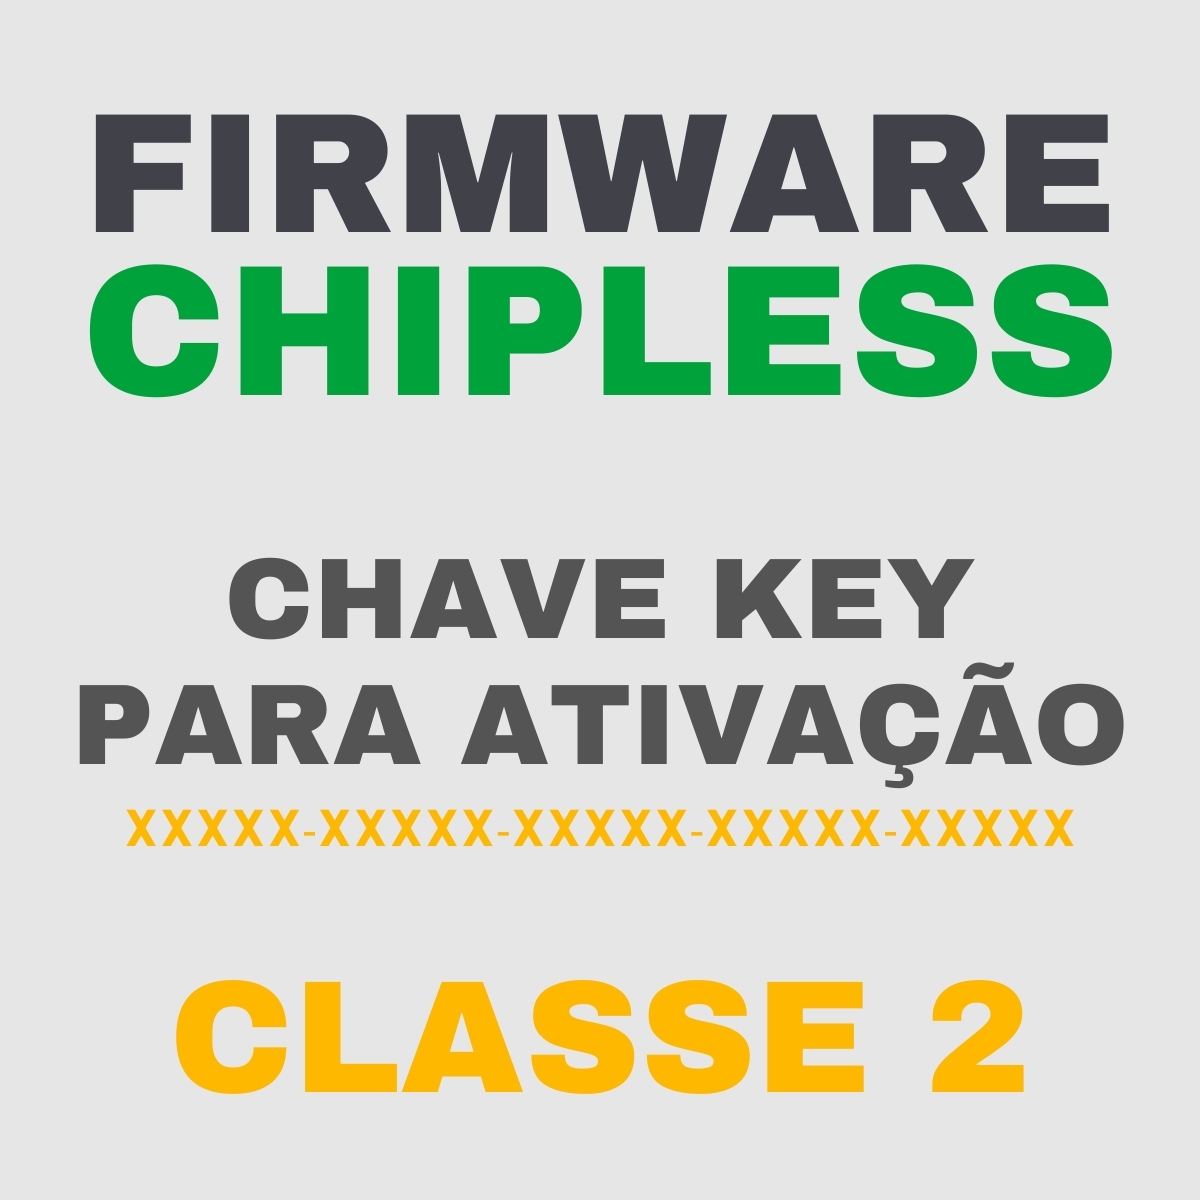 Chave Key de Ativação Firmware ChipLess para Impressora Epson - Classe 2